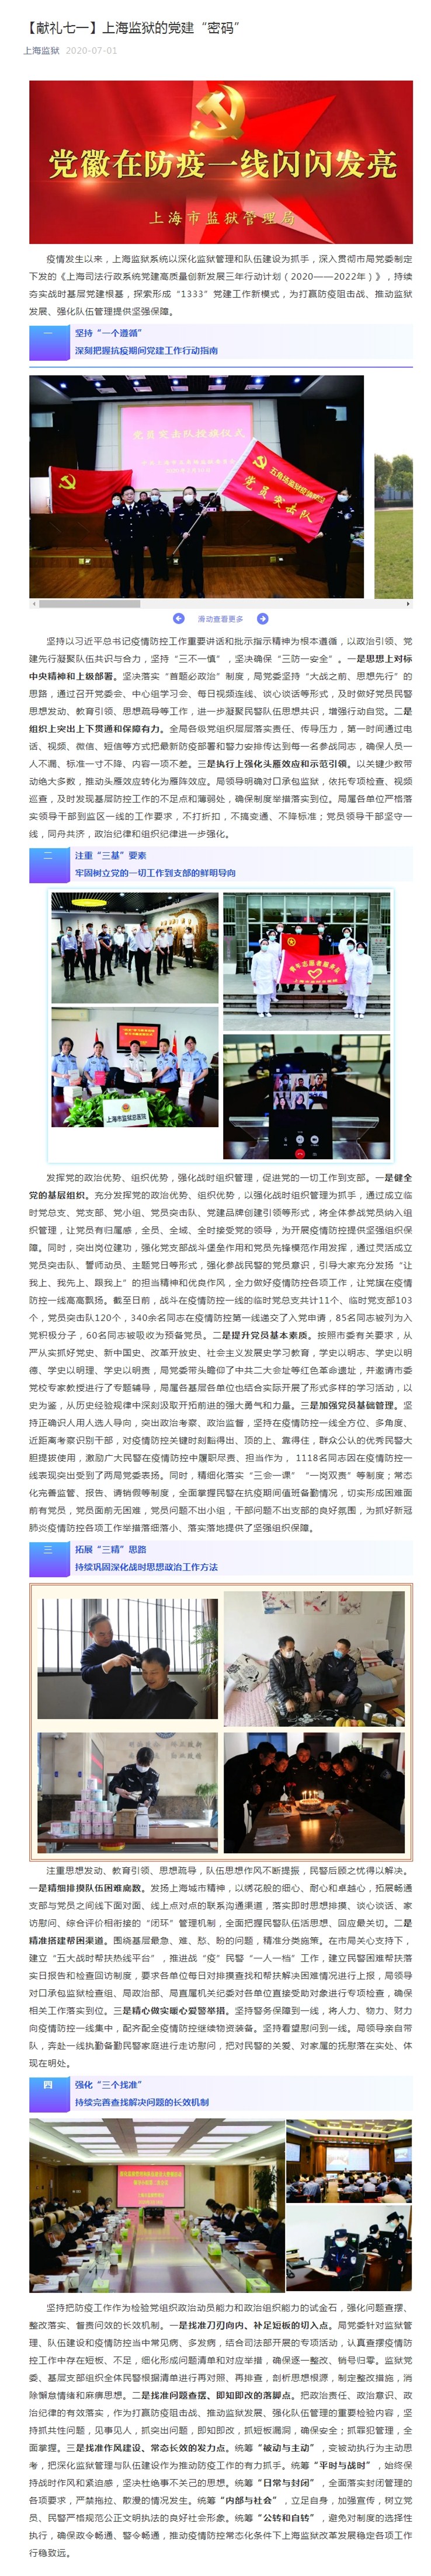 【献礼七一】上海监狱的党建“密码”.jpg